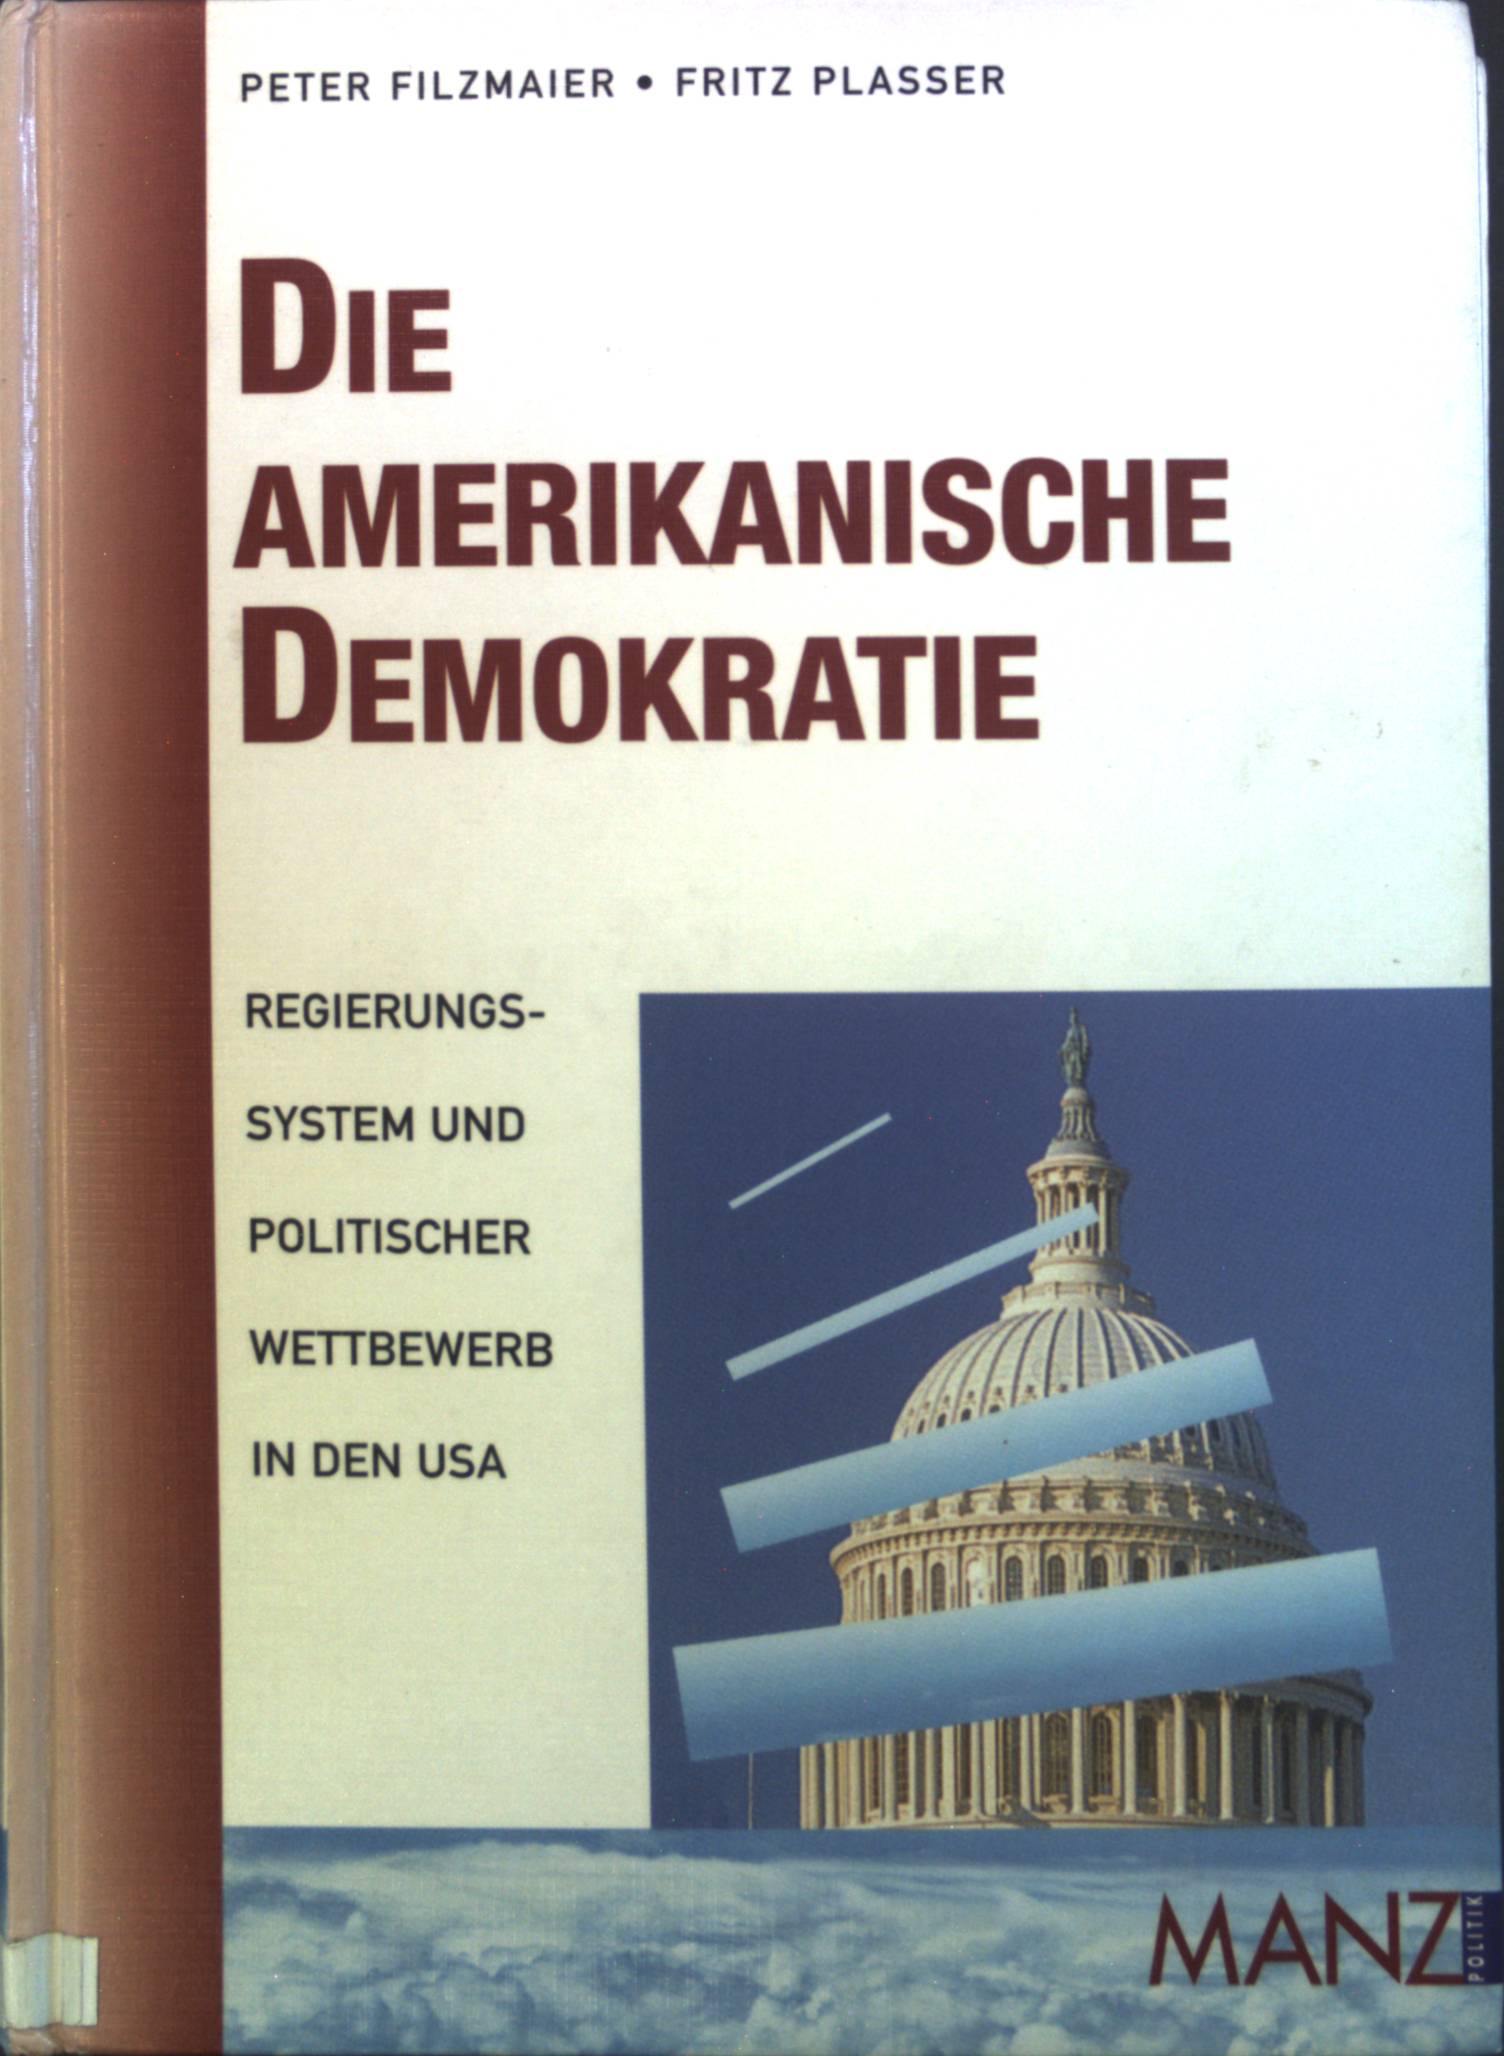 Die amerikanische Demokratie. Regierungssystem und politischer Wettbewerb in den USA. - Filzmaier, Peter und Fritz Plasser